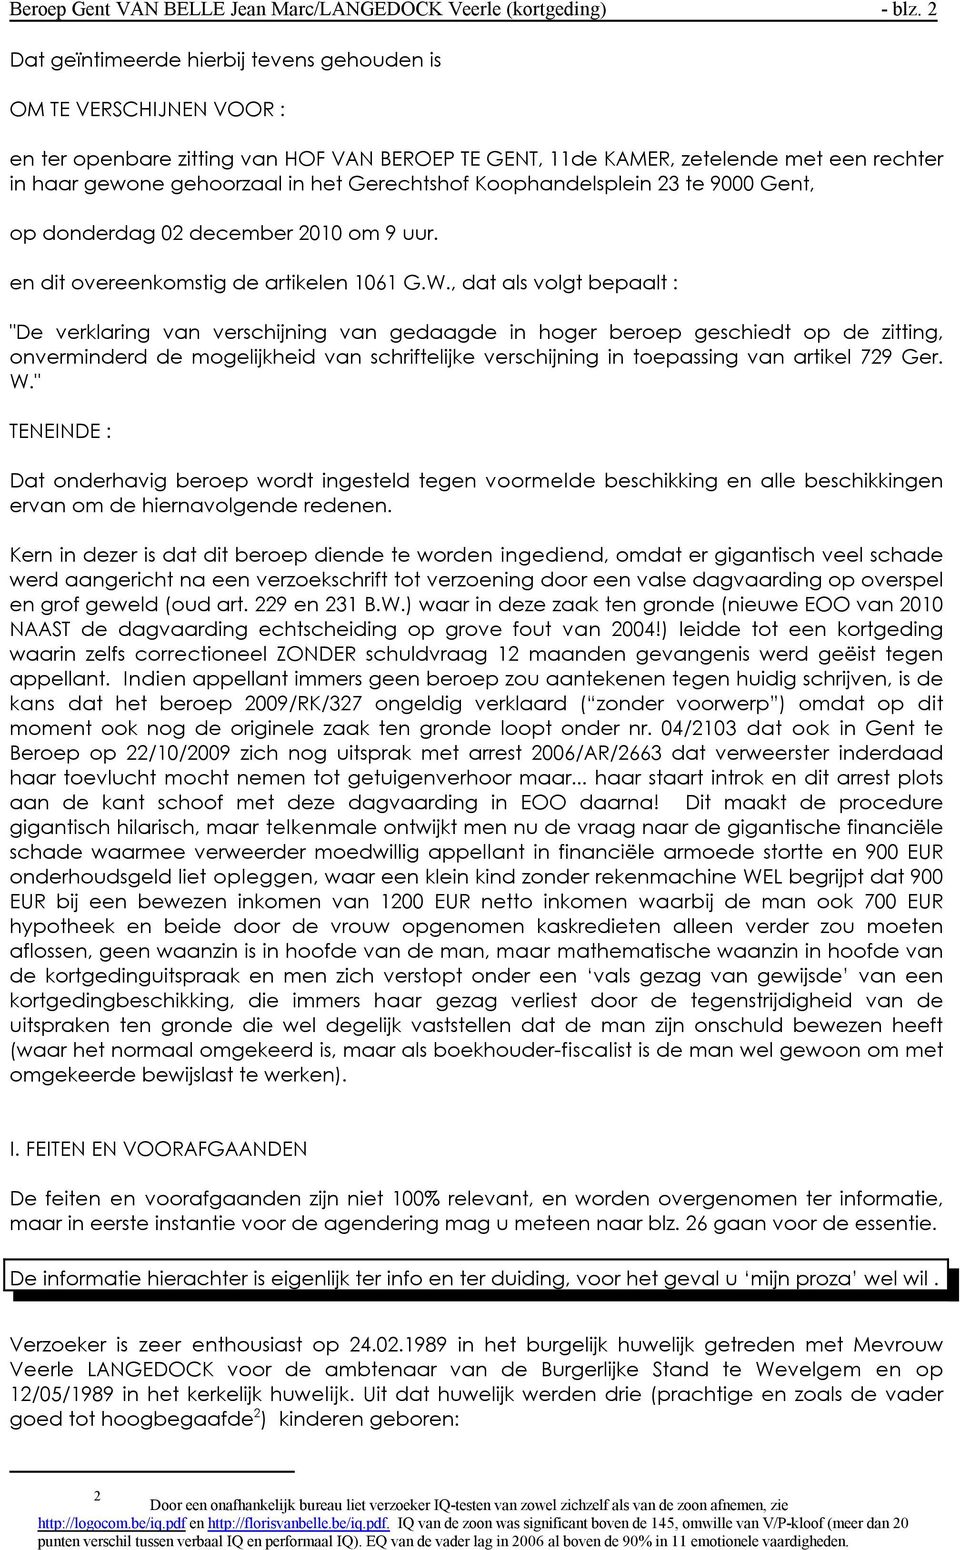 Gerechtshof Koophandelsplein 23 te 9000 Gent, op donderdag 02 december 2010 om 9 uur. en dit overeenkomstig de artikelen 1061 G.W.